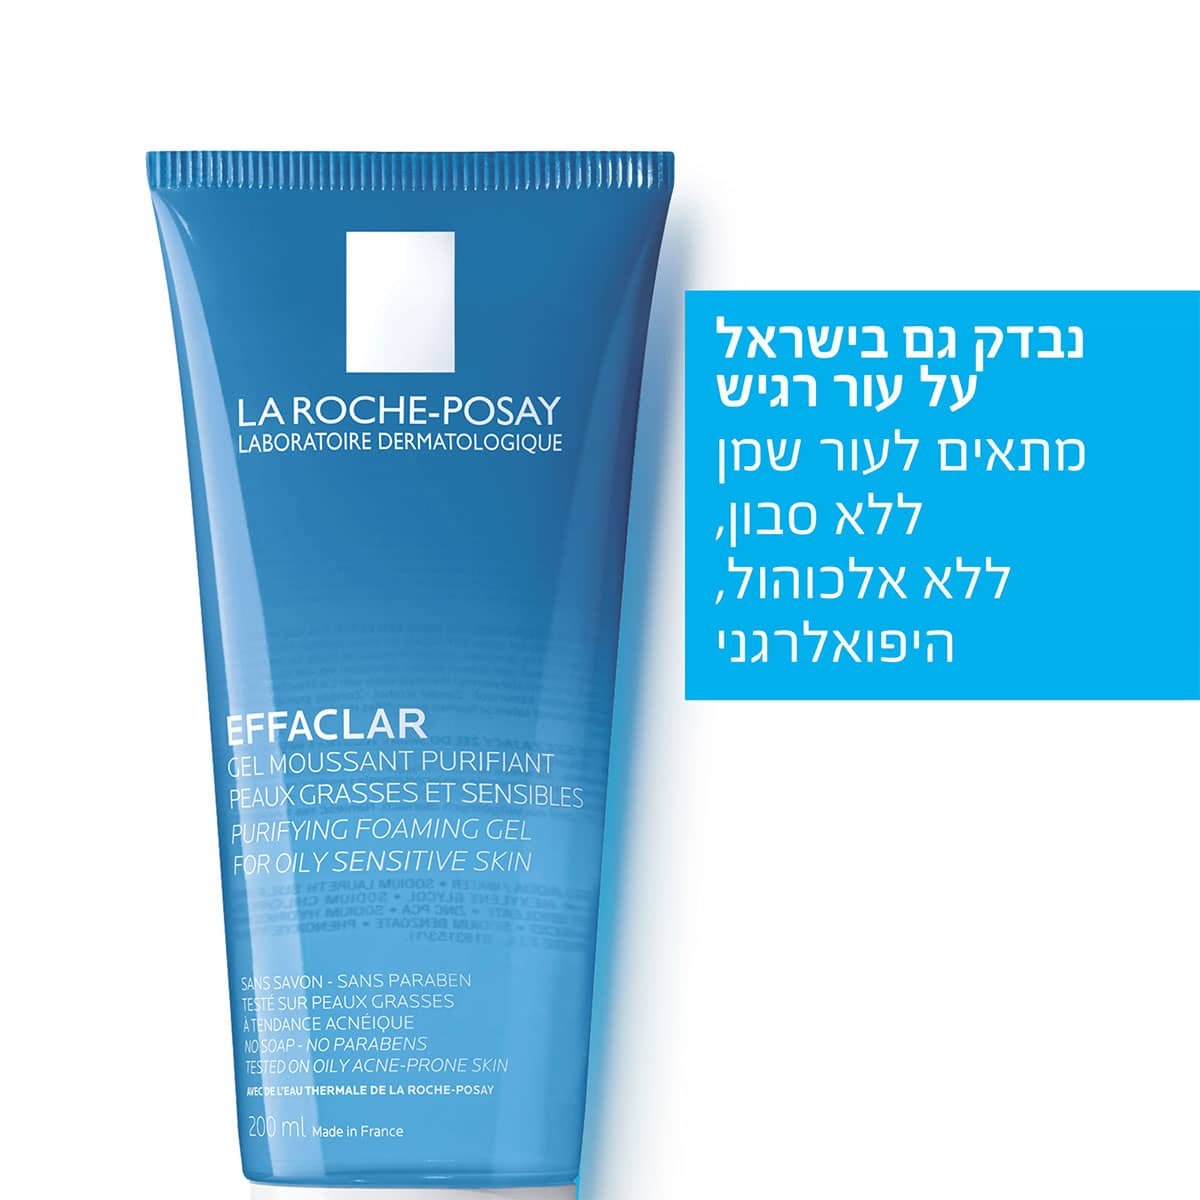 נבדק גם בישראל על עור רגיש. מתאים לעור שמן, ללא סבון, ללא אלכוהול, היפואלרגני